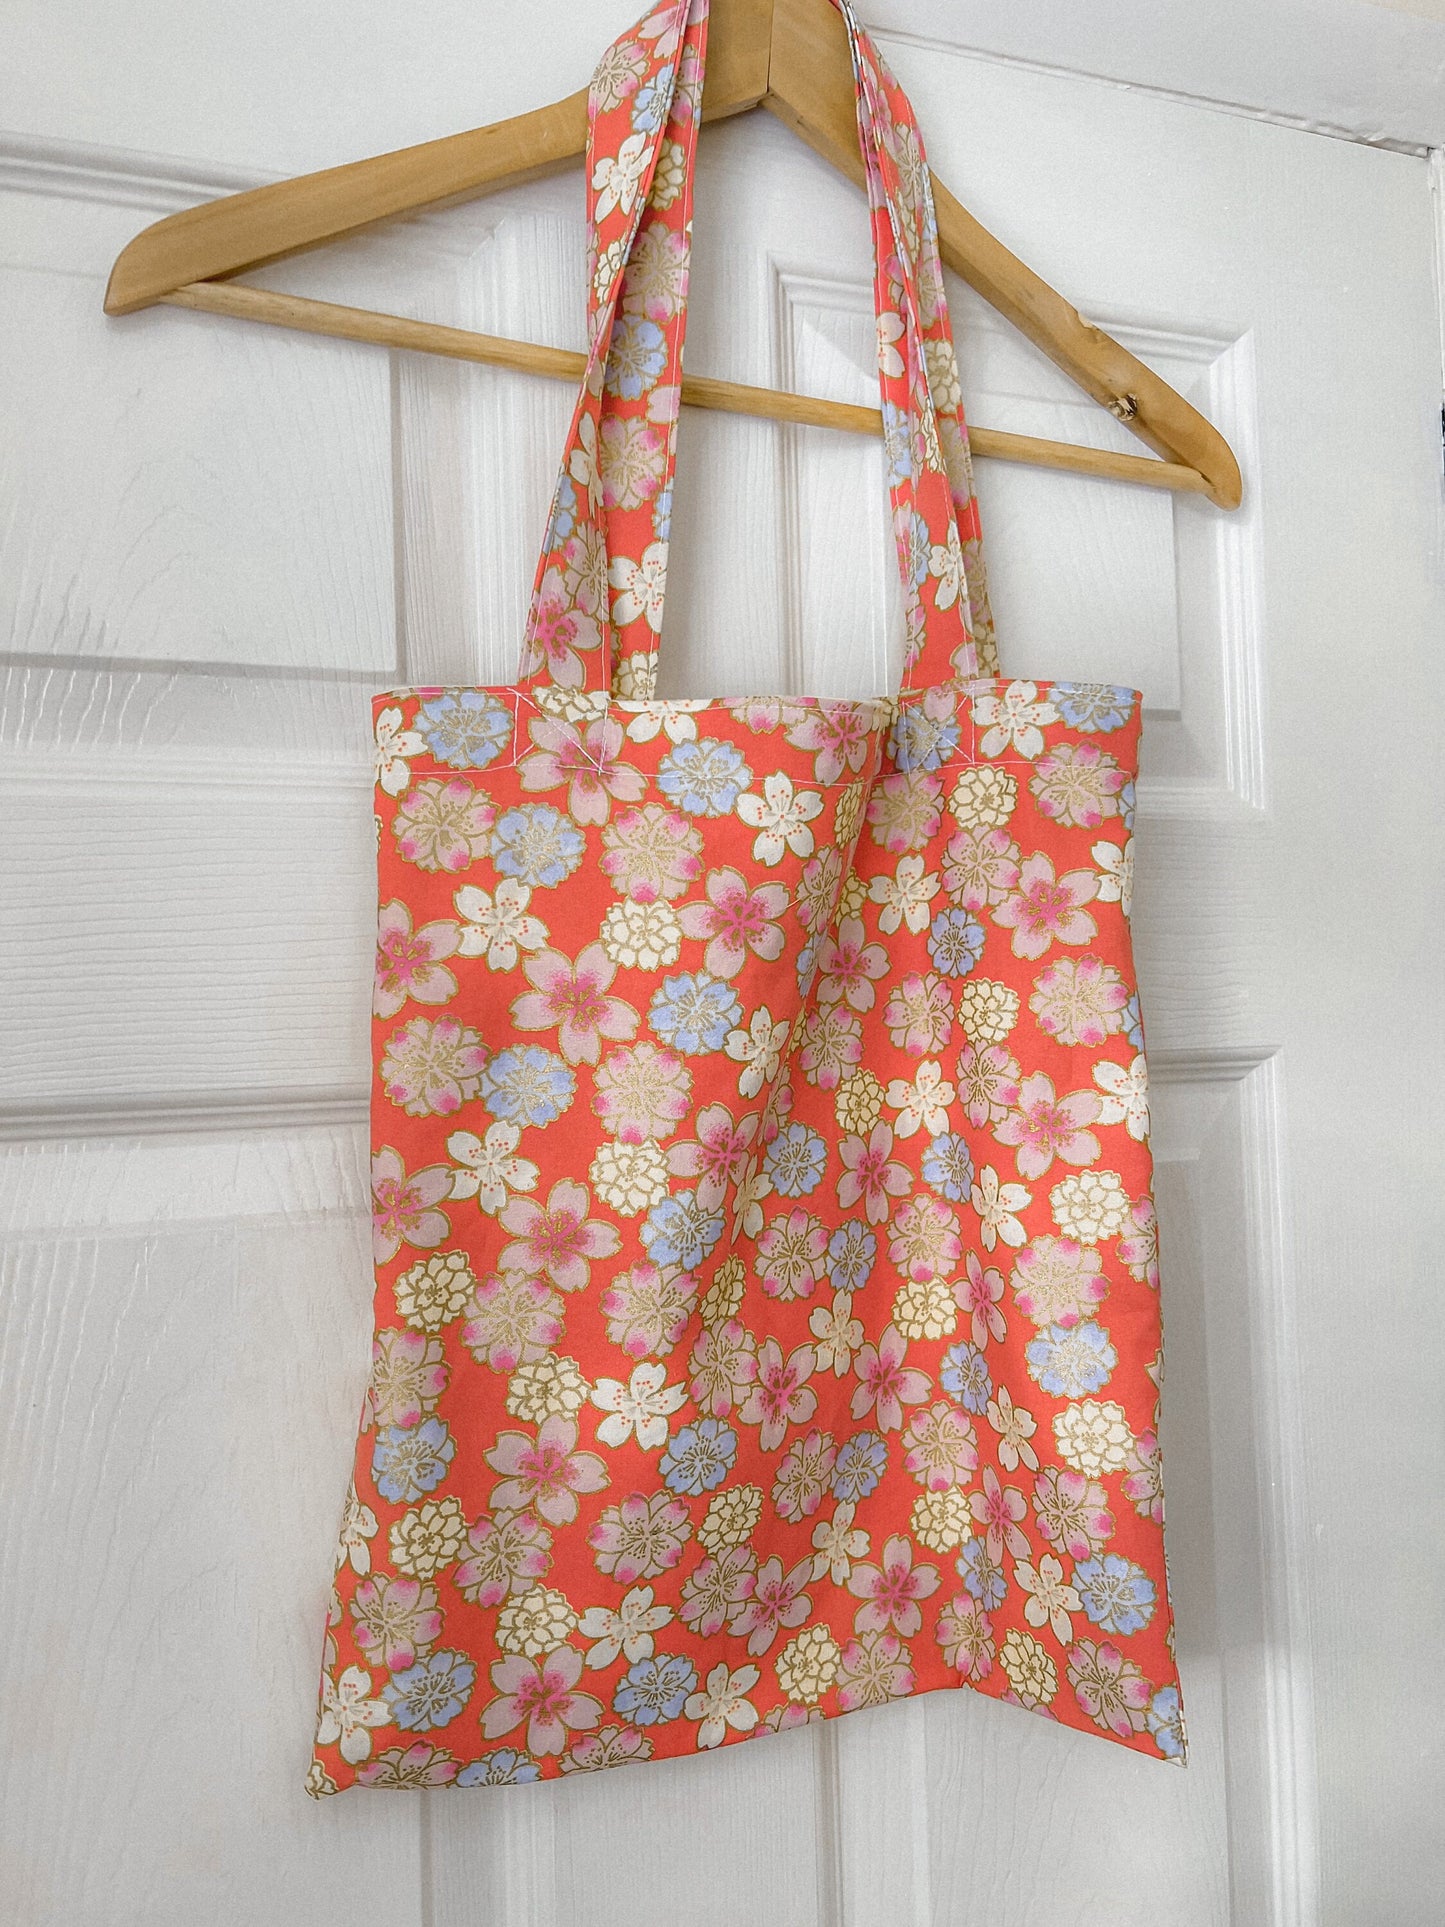 FLORAL TOTE BAG orange peach oriental floral tote bag, fully reversible floral cotton tote bag, ditsy floral canvas bag handmade in U.K.